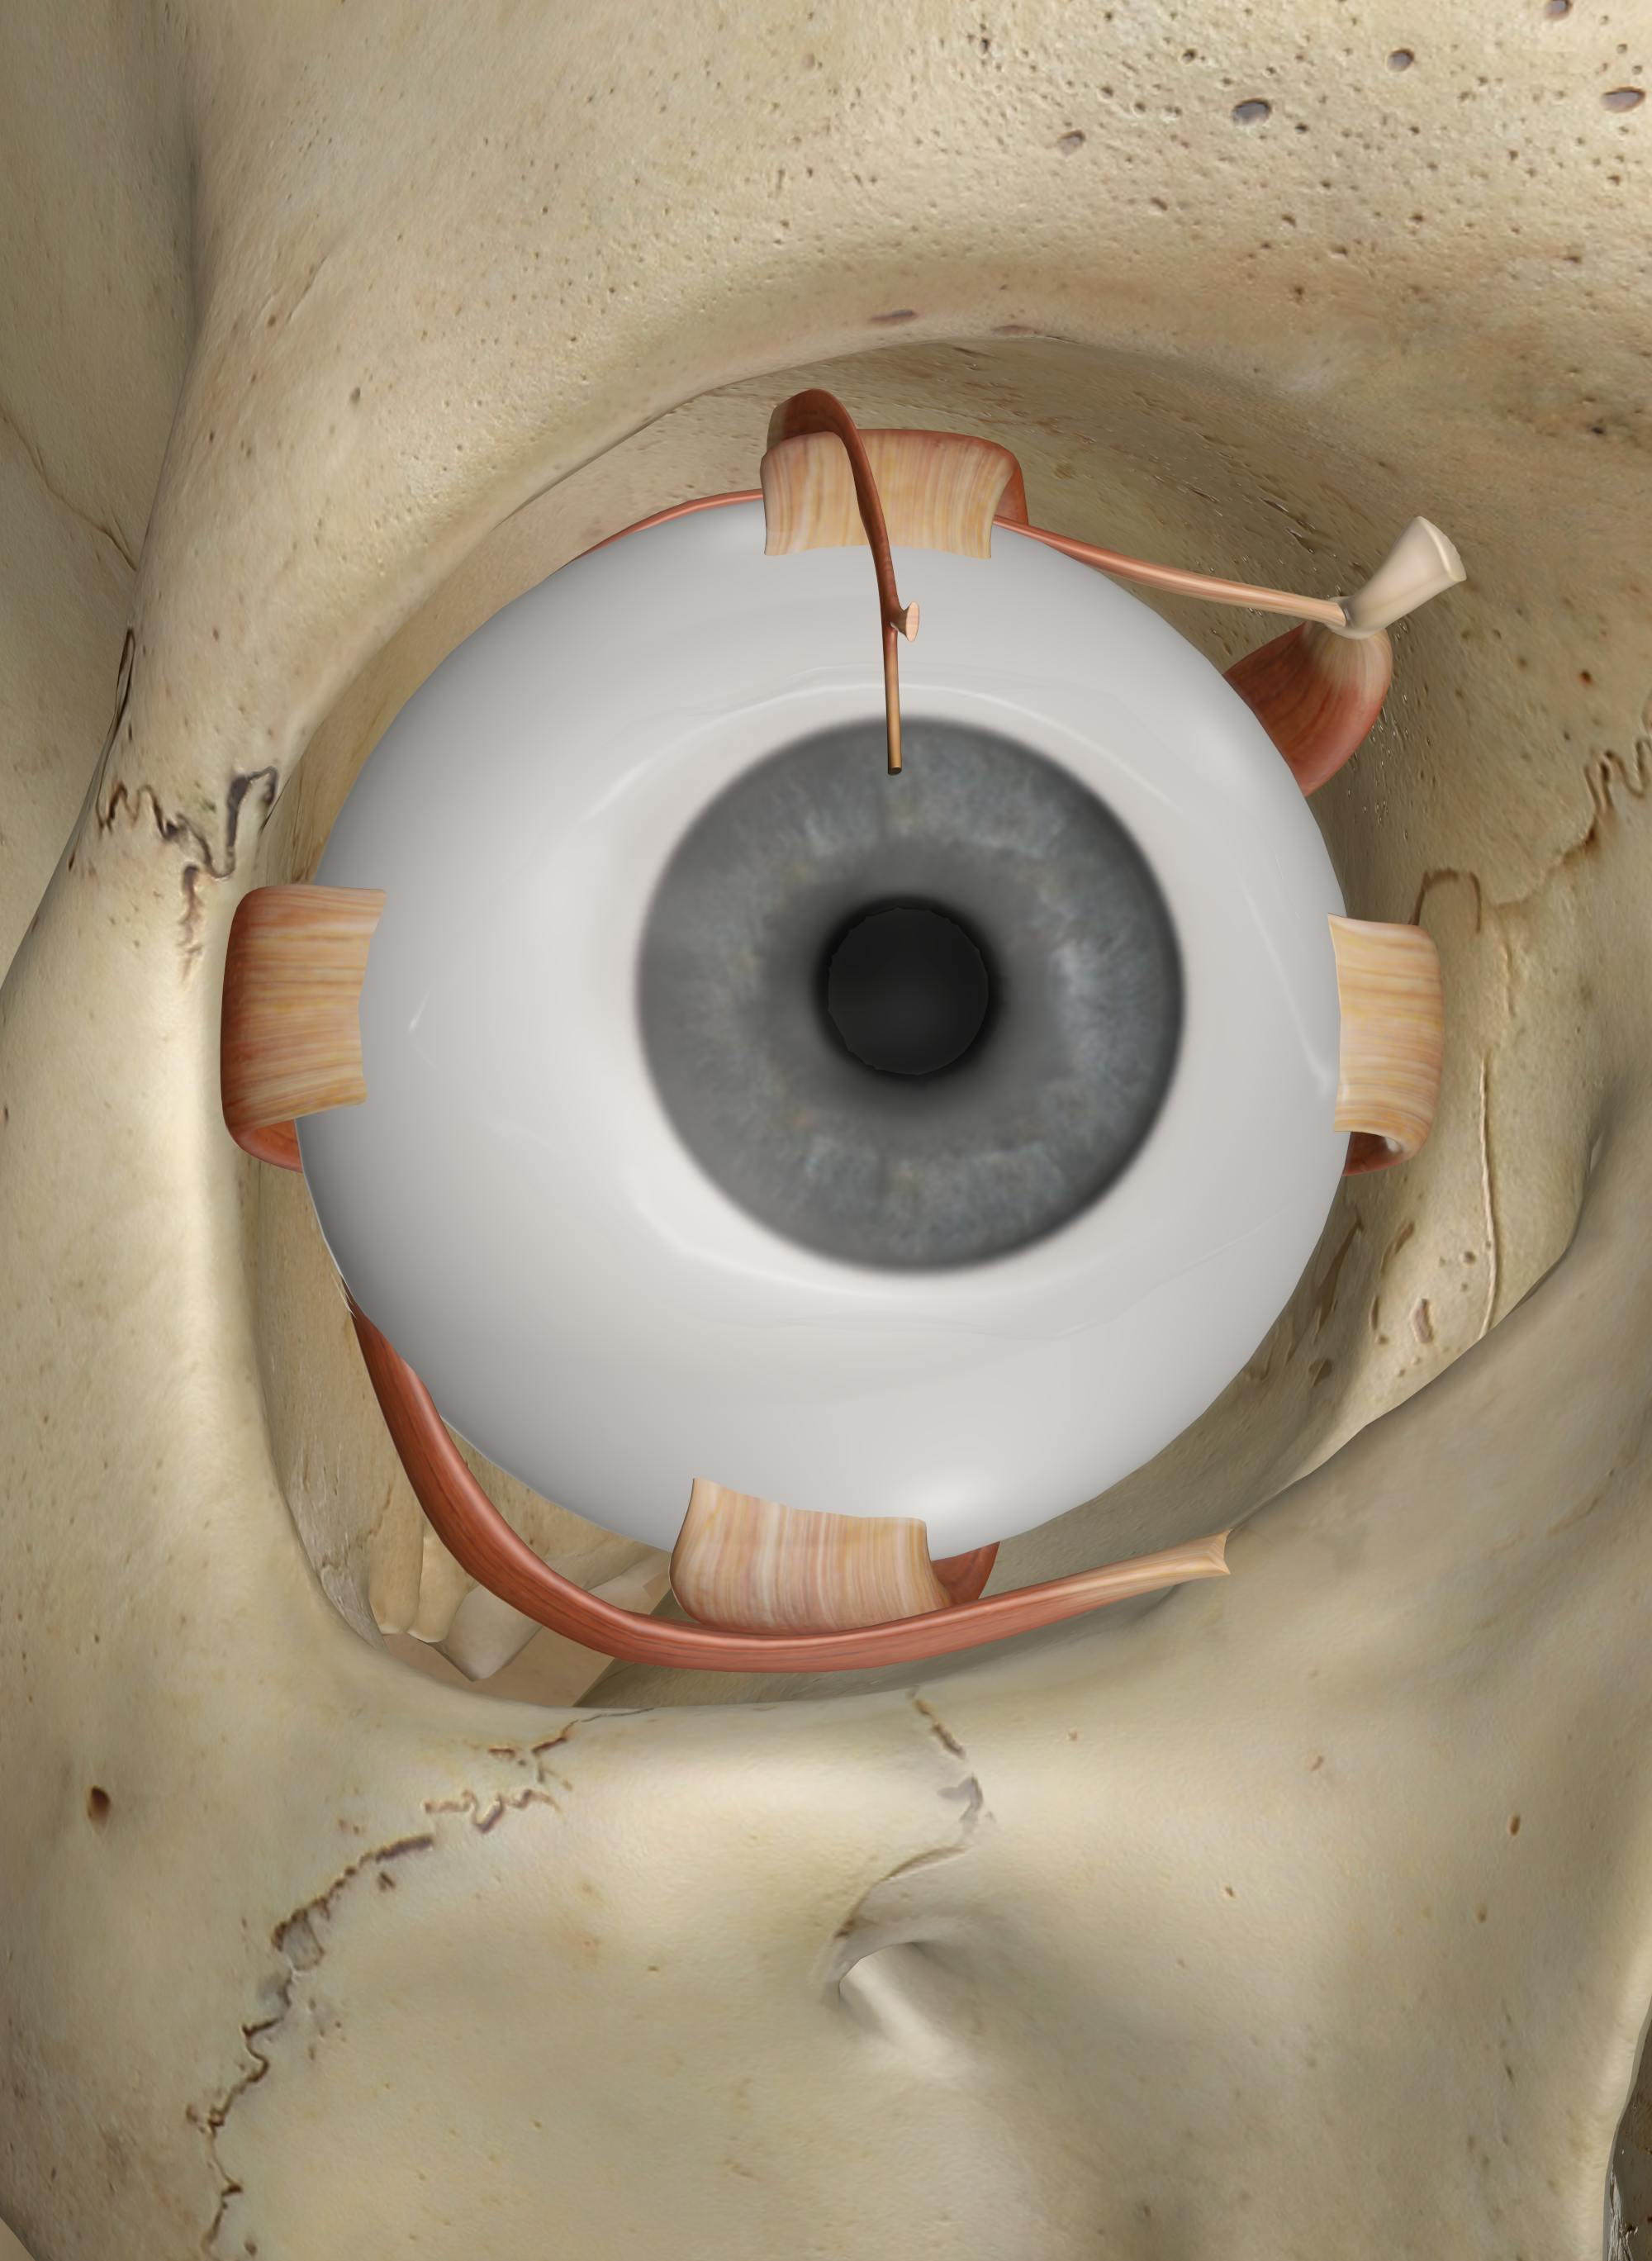 eye muscle anatomy